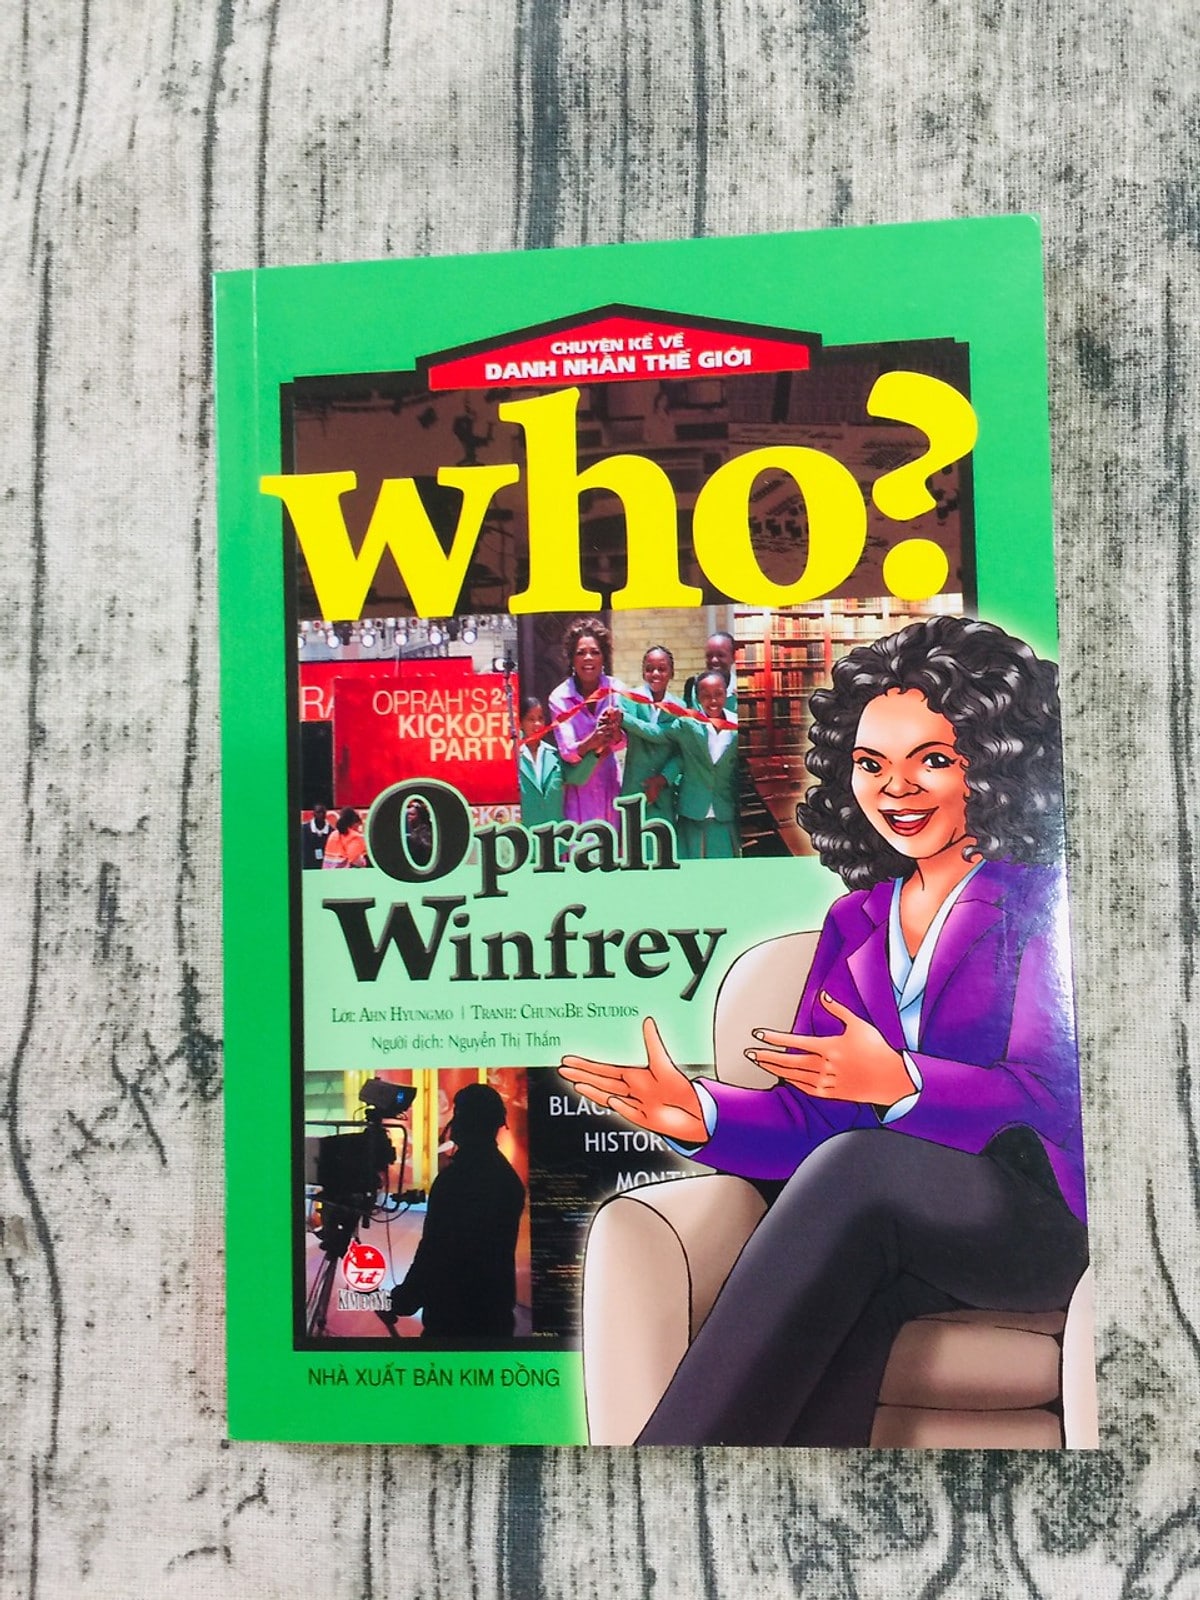 5.Who_ Chuyện Kể Về Danh Nhân Thế Giới_ Oprah Winfrey-min